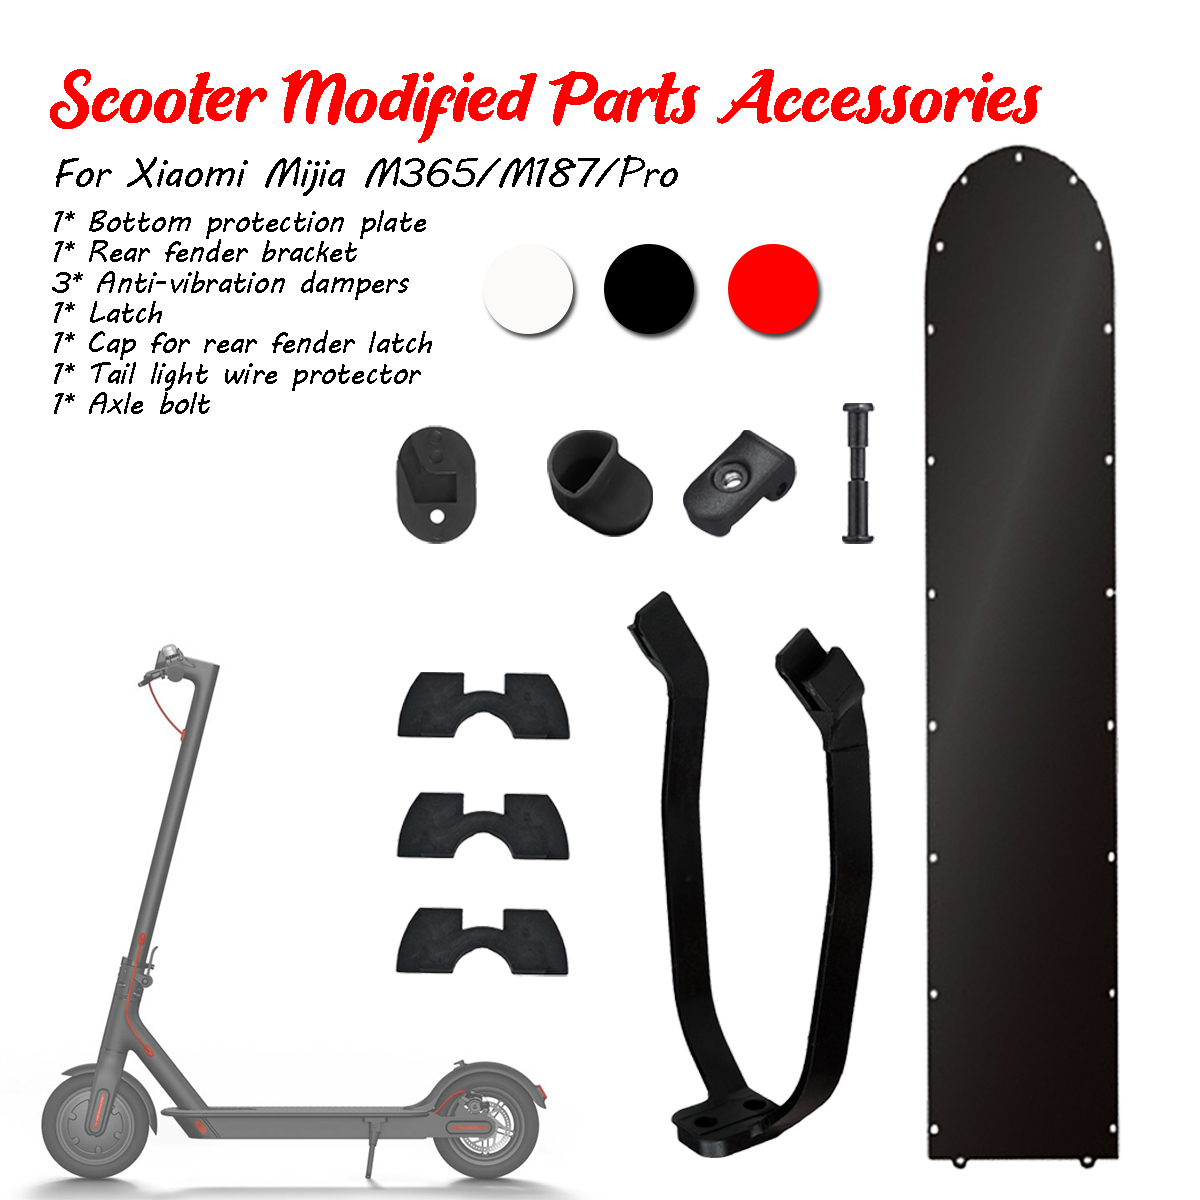 7PCS vermelho / preto / branco inicial acessórios modificados para M365 / M187 / Pro scooter elétrico